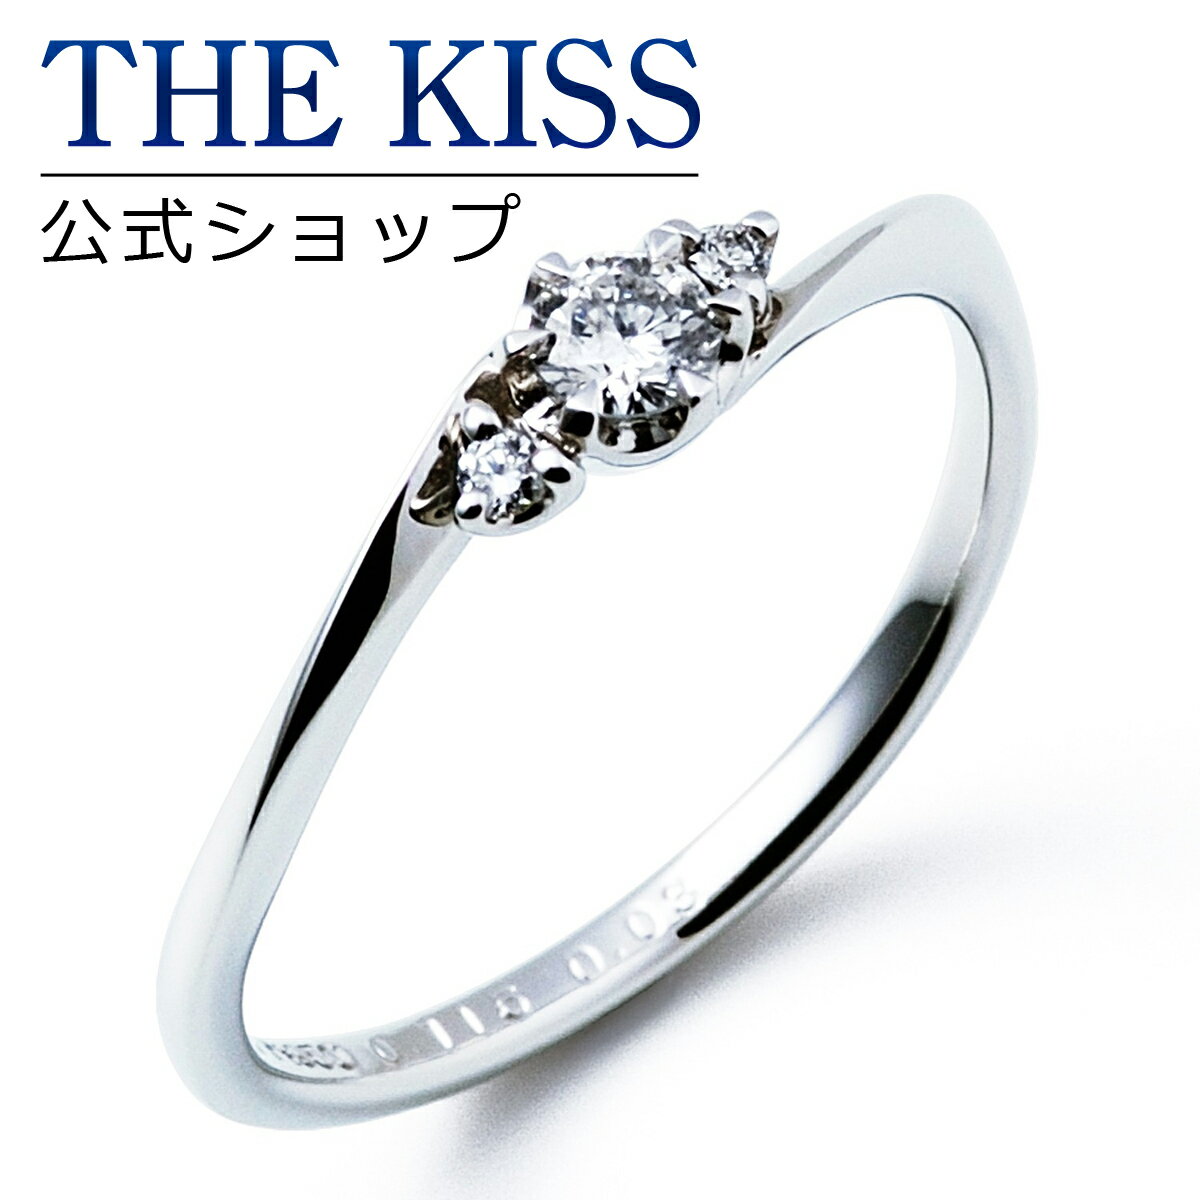 【ラッピング無料】【刻印無料】【THE KISS Anniversary】THE KISS 公式ショップ プラチナ エンゲージリング 婚約指輪 結婚指輪 ブライダルリング プロポーズ THE KISS ザキッス 指輪 6061109120 シンプル ブライダル 鑑定書付 ダイヤモンド【0.20ct F VS2 EX】